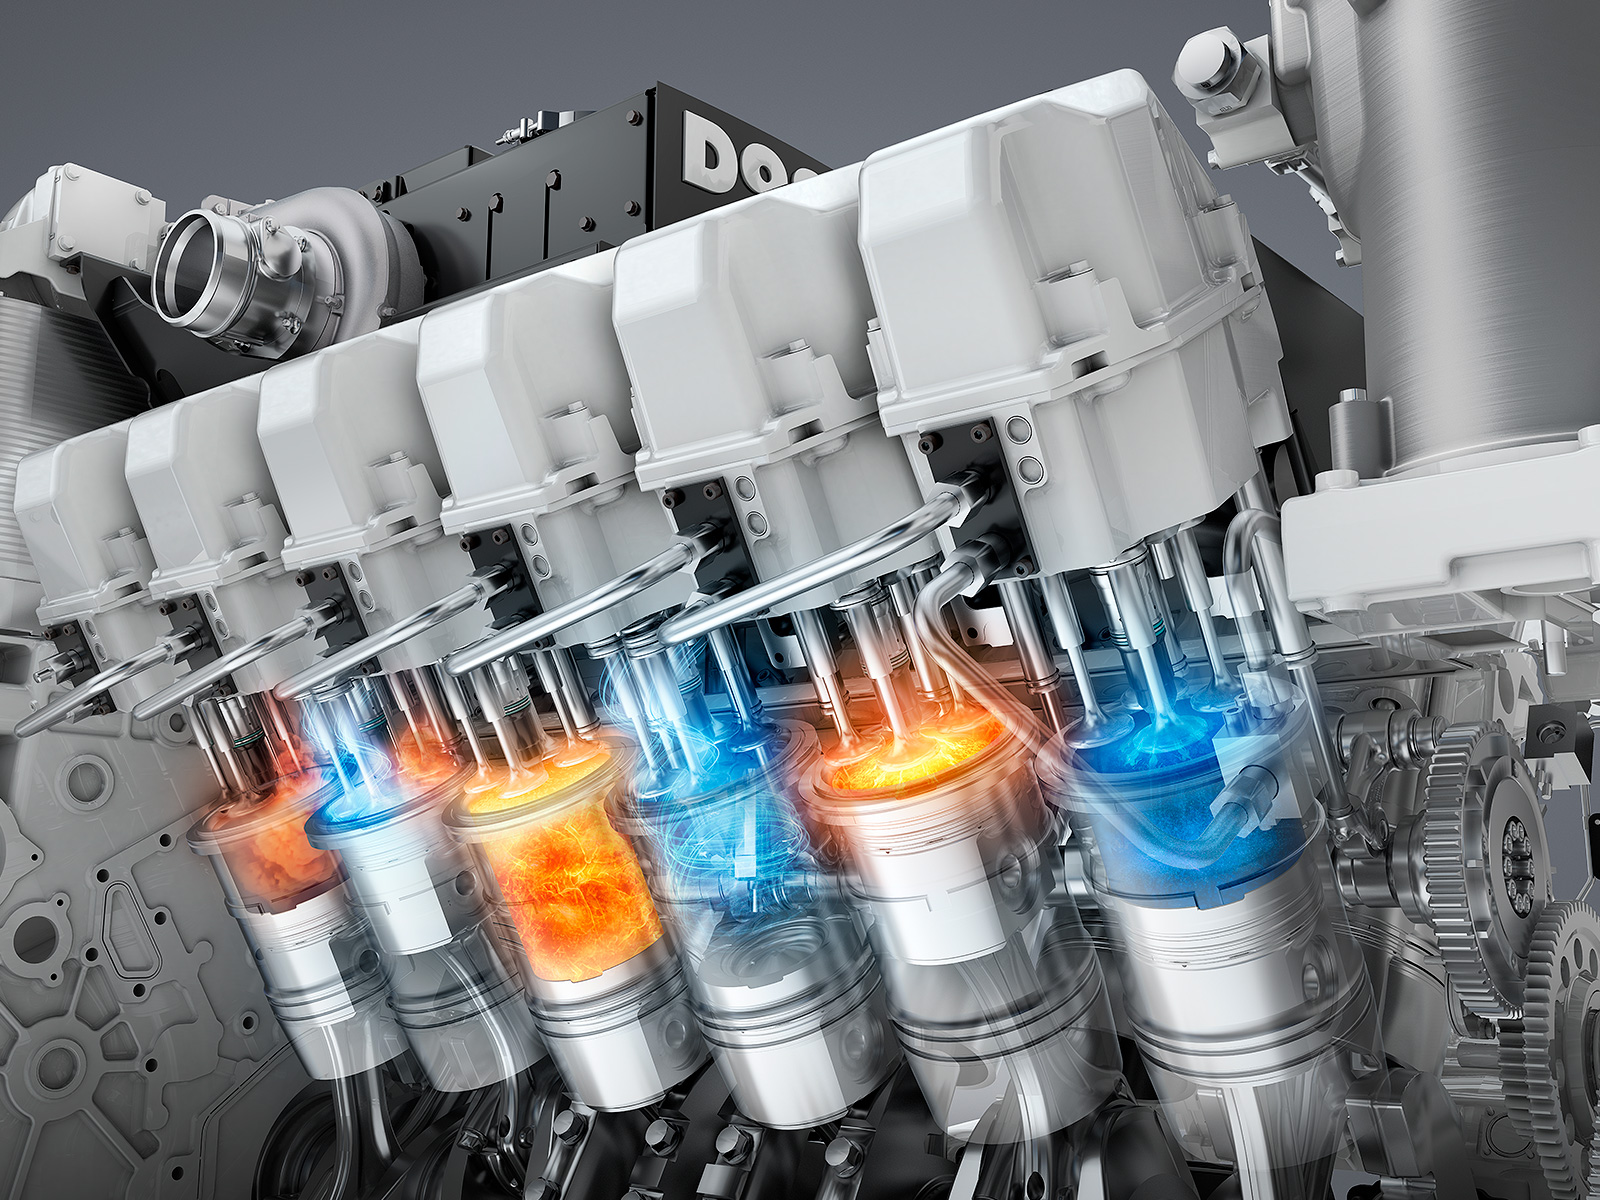 Key Visual Diesel Engines